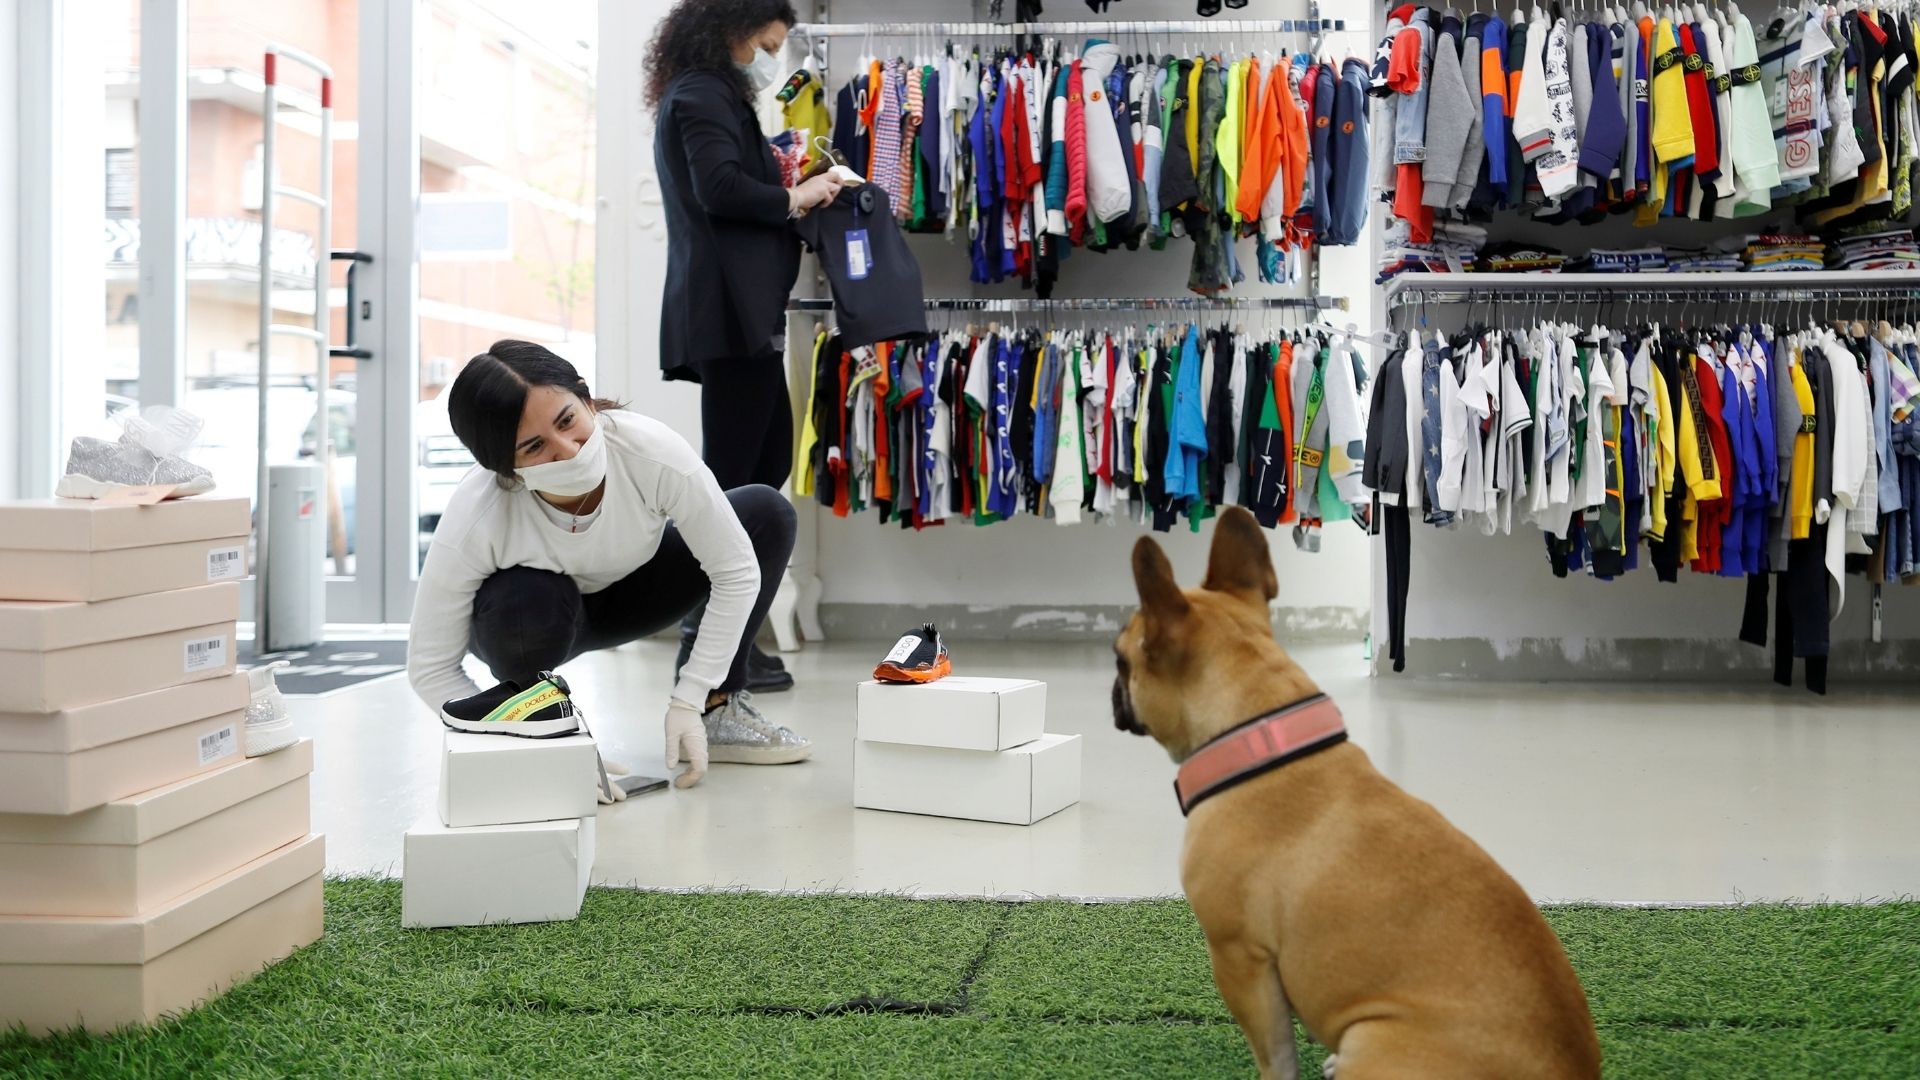 prometedor Divertidísimo Inquieto Zara, Mediamark, H&M y más: tiendas que admiten perros en su interior |  Business Insider España